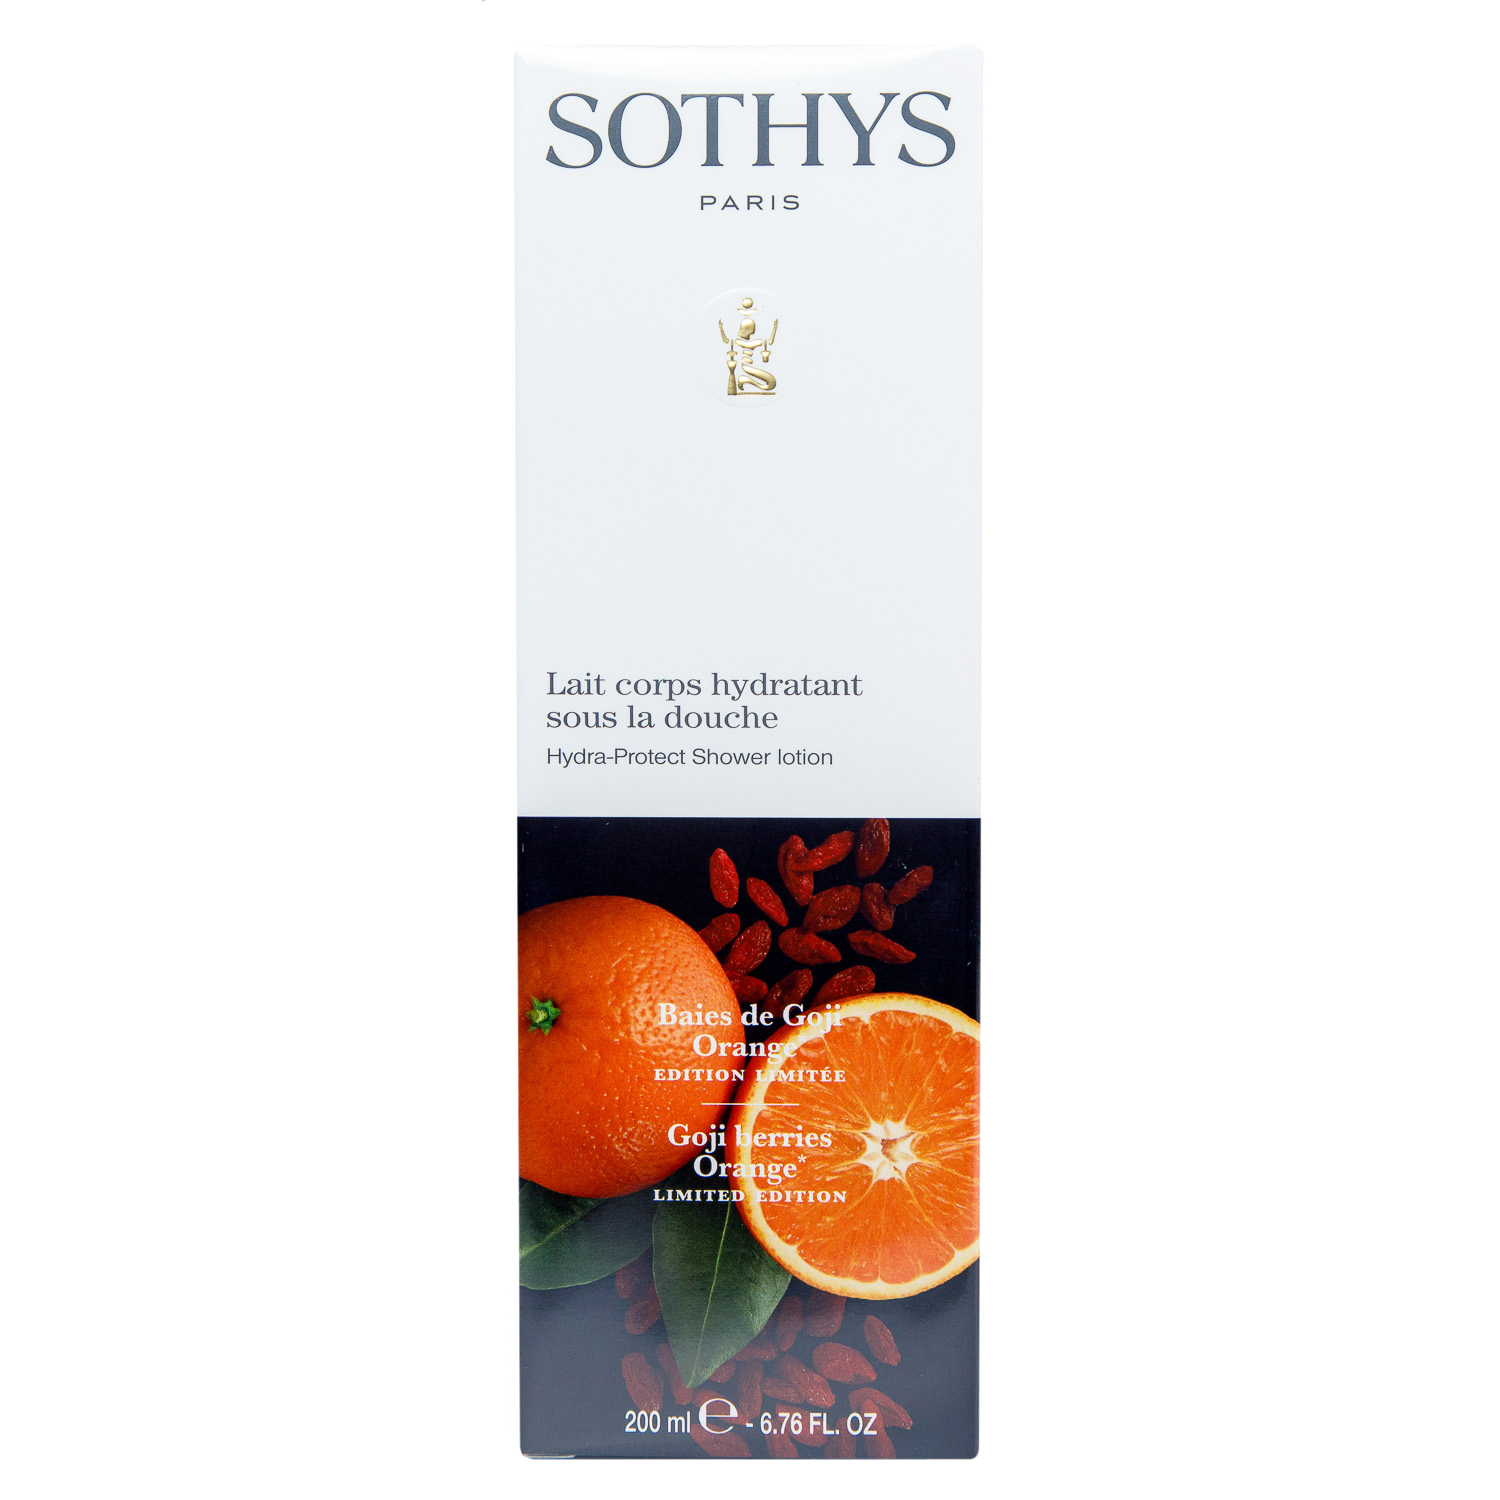 Sothys Увлажняющий лосьон-уход для использования в душе Ягоды годжи - апельсин, 200 мл (Sothys, Seasonal Treatment) увлажняющий лосьон sothys ягоды годжи и апельсин 200 мл